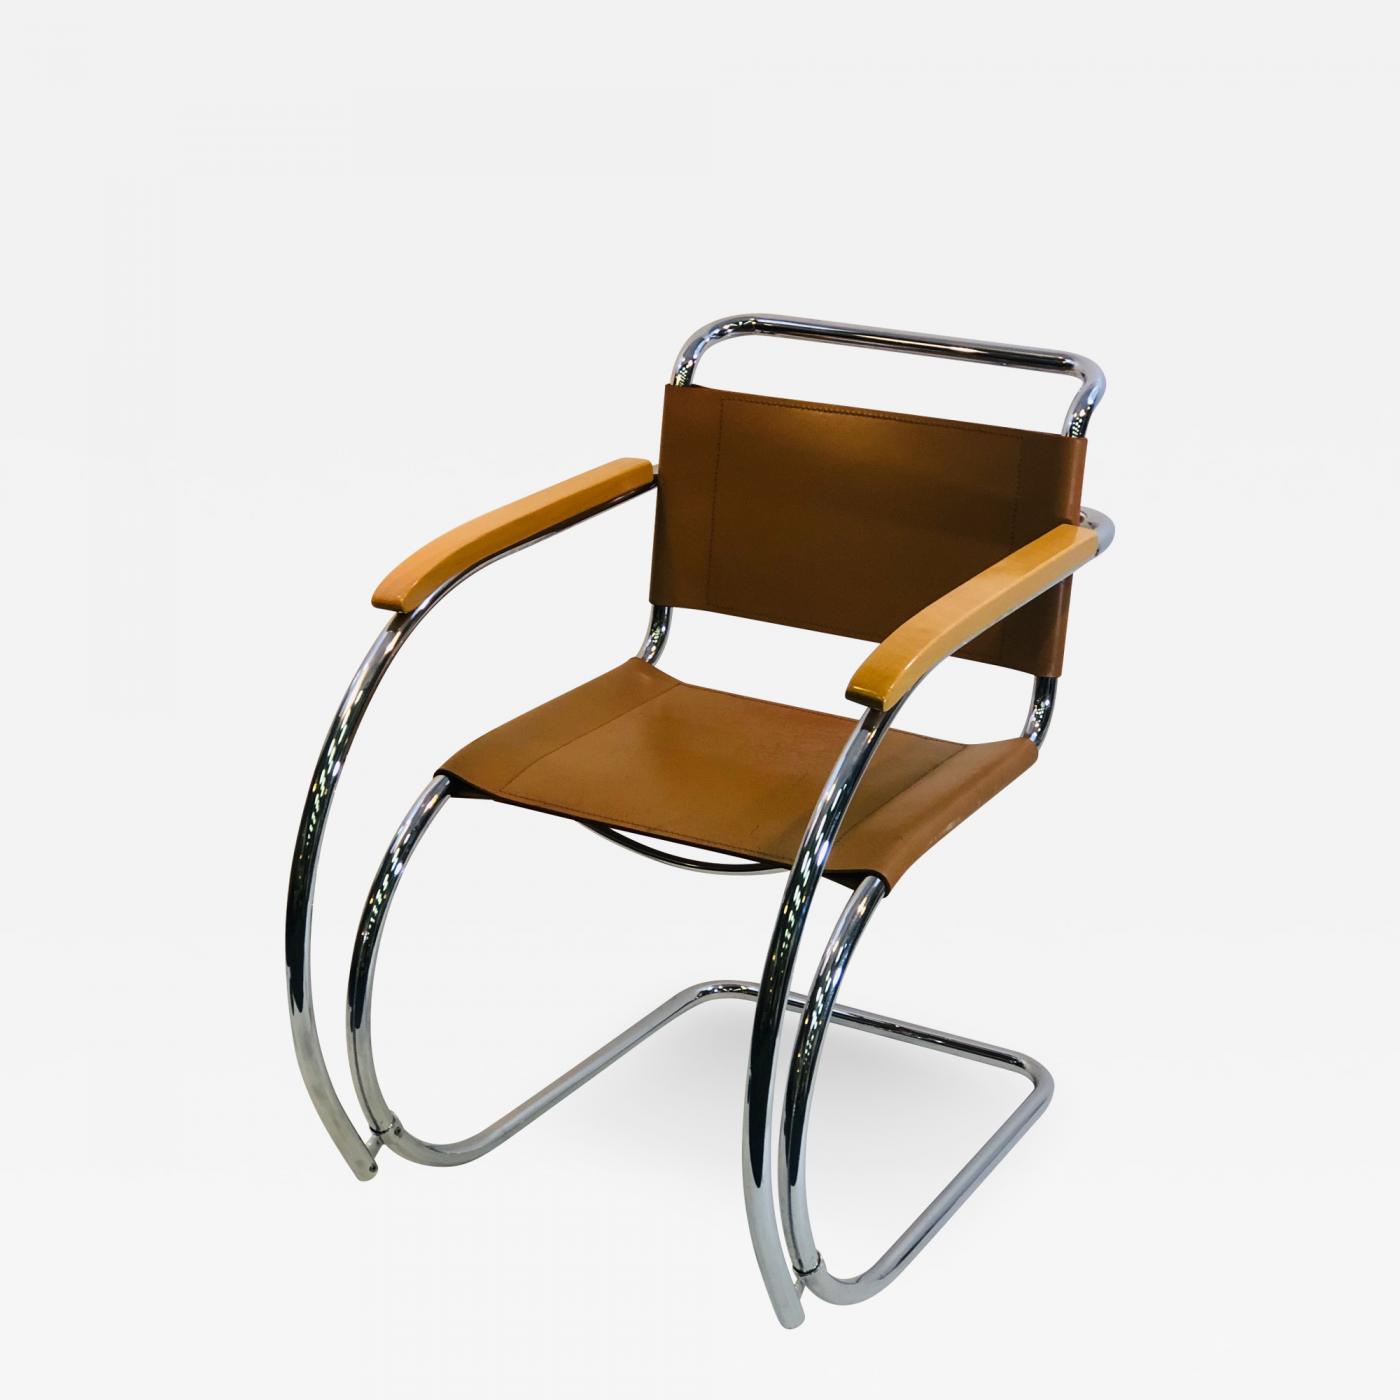 Ooit Aanvrager Zenuw Marcel Breuer - Vintage Cantilever Chair by Marcel Breuer for Thonet Model  S533